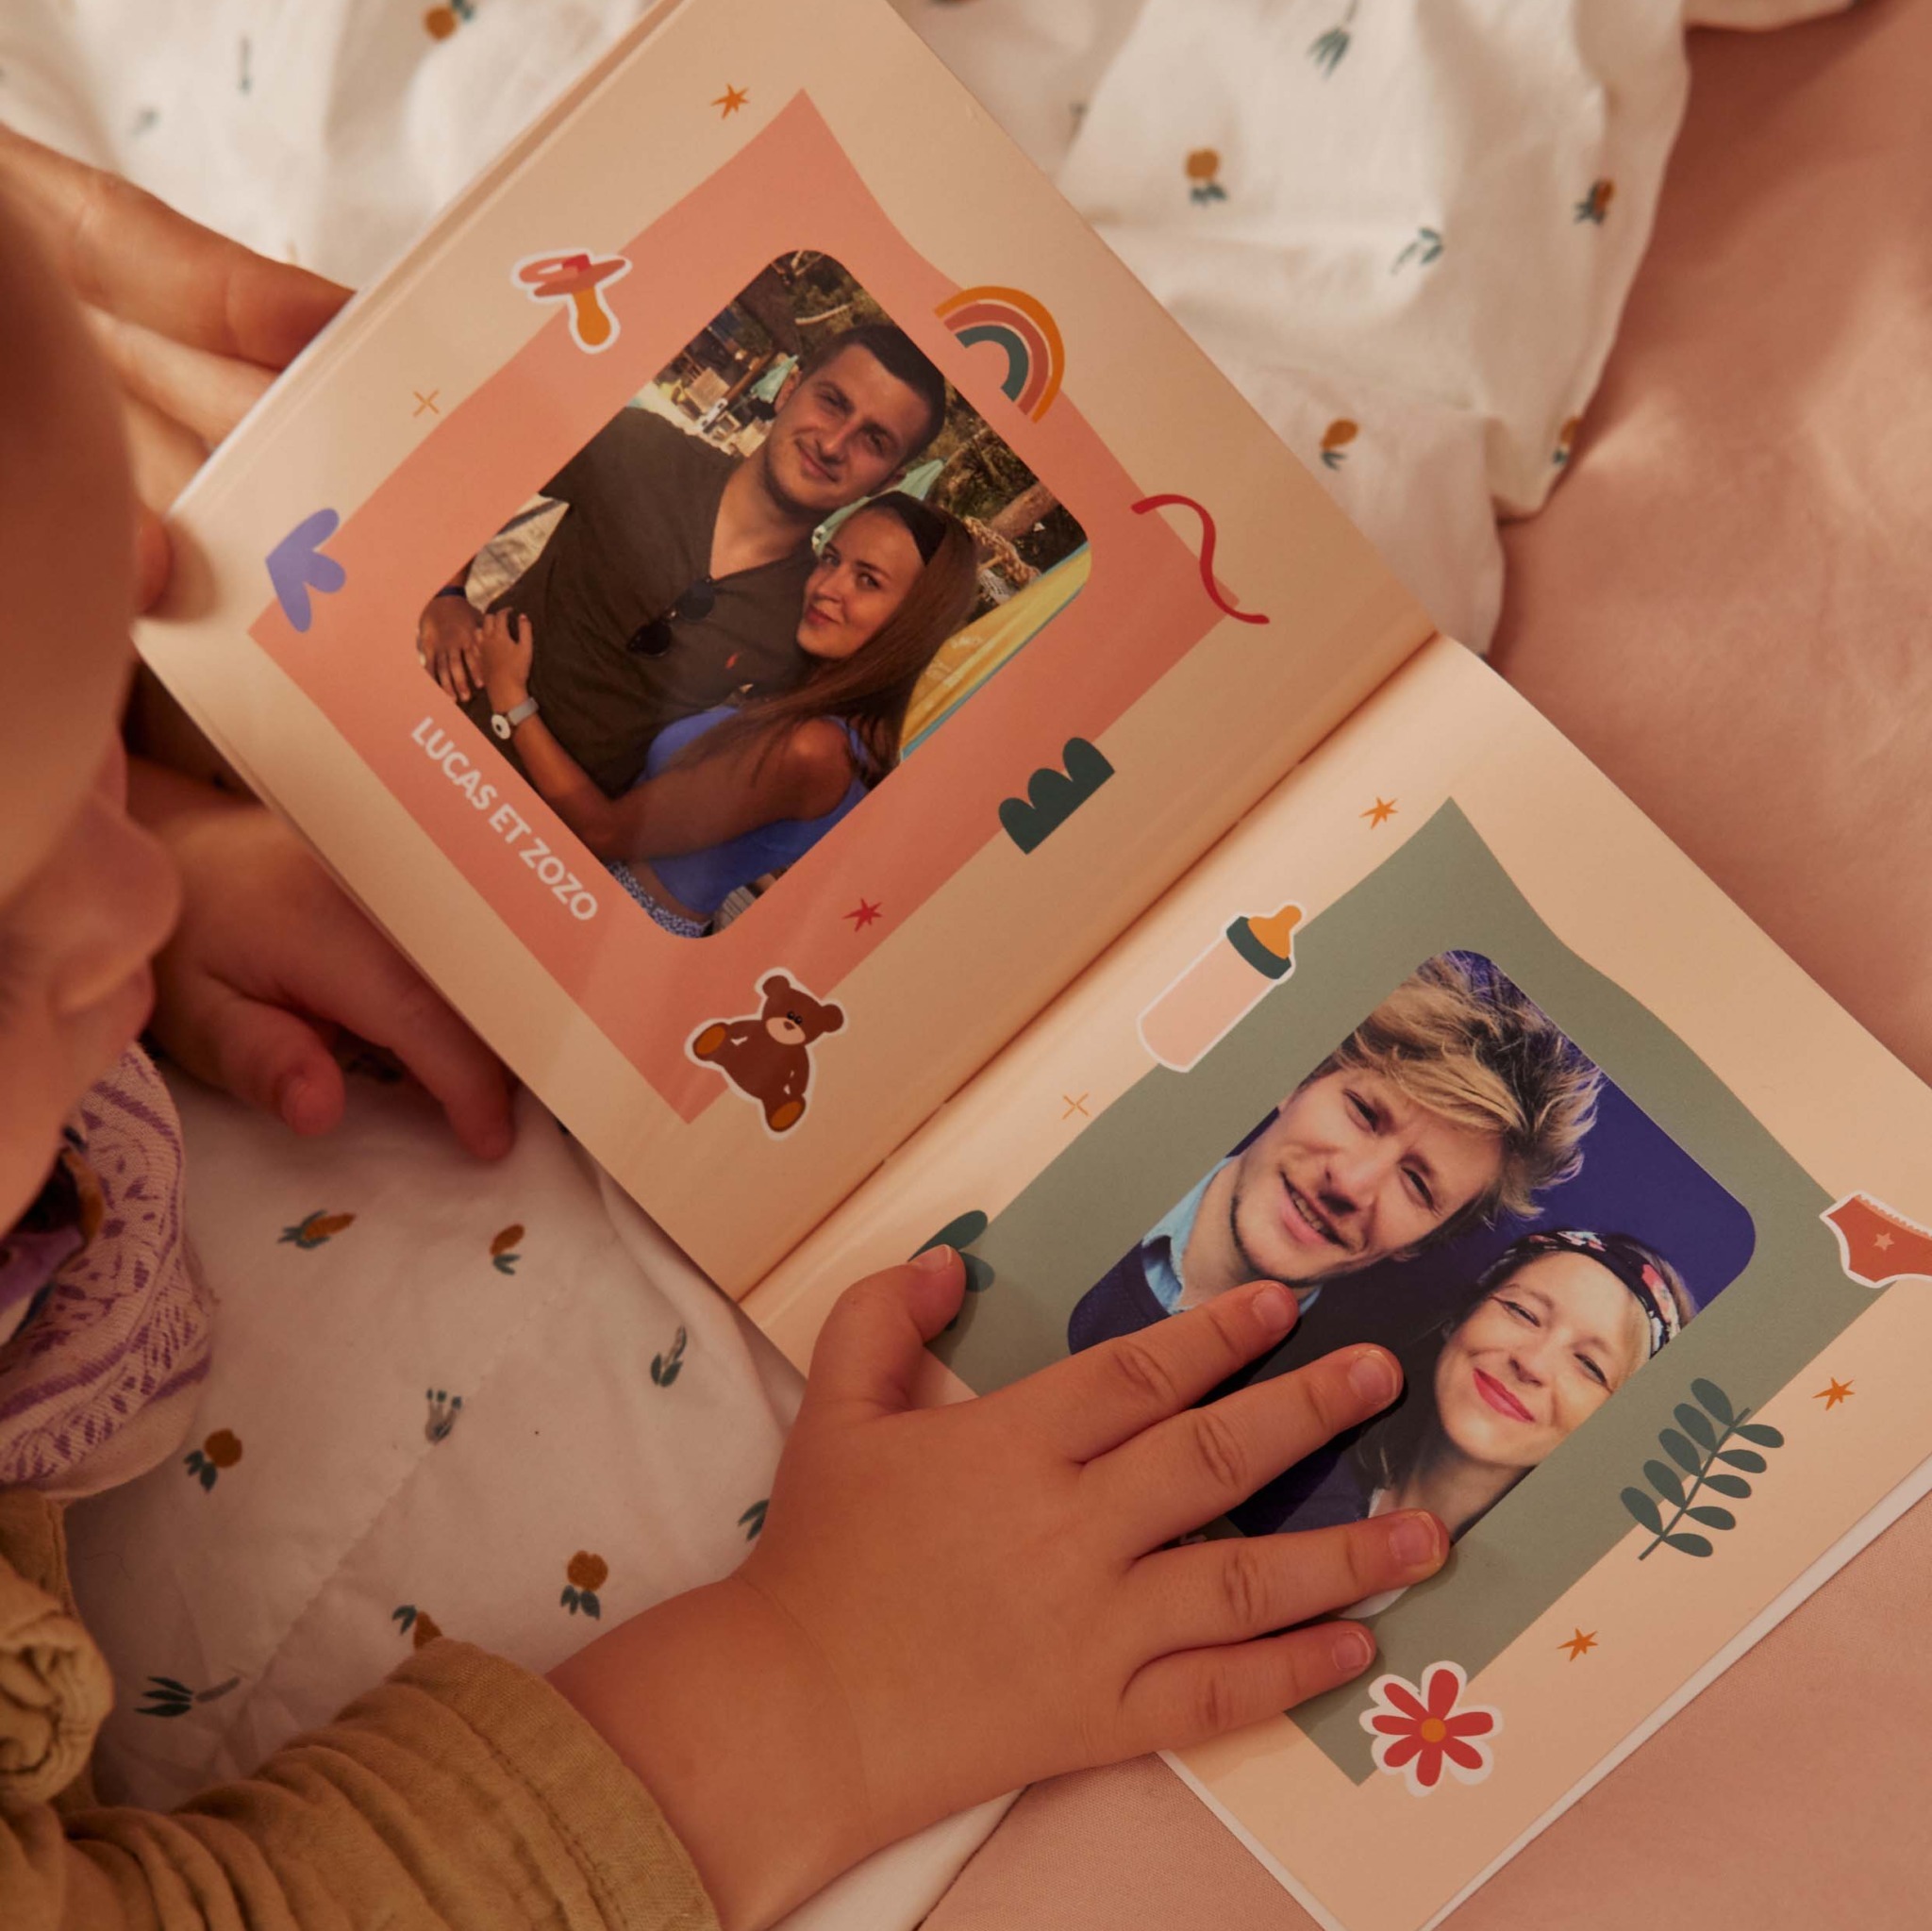 bambin lit un imagier personnamlisé avec les photos de sa famille